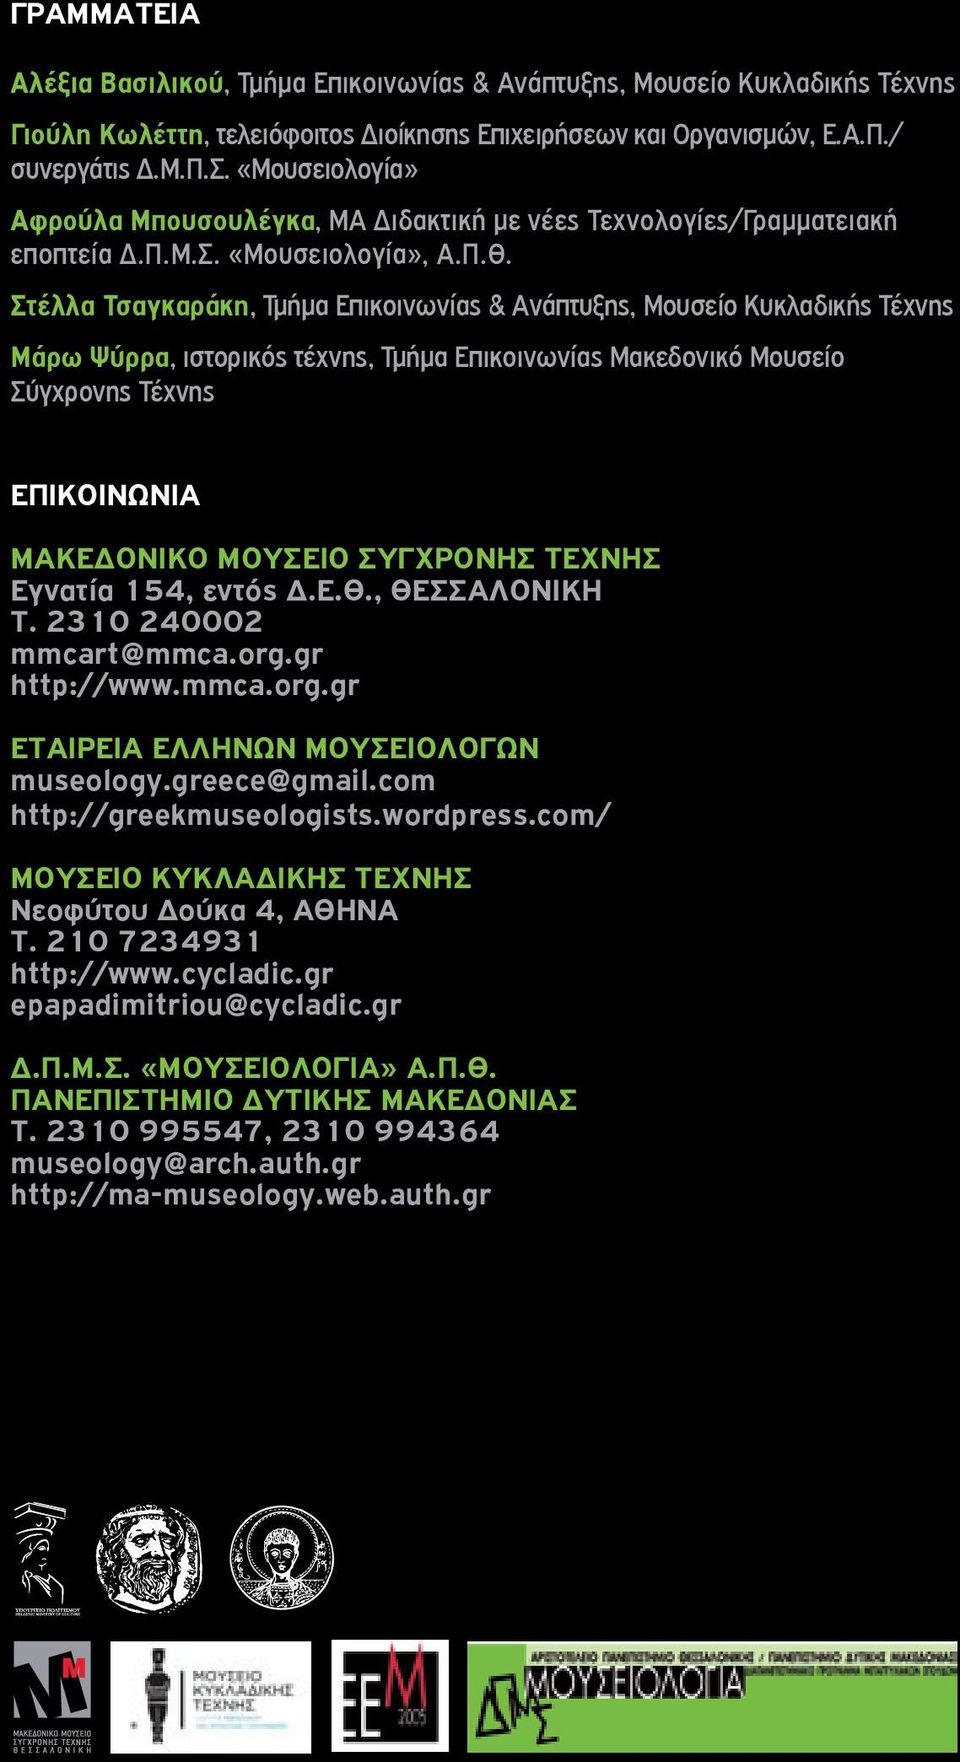 Στέλλα Τσαγκαράκη, Τμήμα Επικοινωνίας & Ανάπτυξης, Μουσείο Κυκλαδικής Τέχνης Μάρω Ψύρρα, ιστορικός τέχνης, Τμήμα Επικοινωνίας Μακεδονικό Μουσείο Σύγχρονης Τέχνης EΠΙΚΟΙΝΩΝΙA ΜΑΚΕΔΟΝΙΚΟ ΜΟΥΣΕΙΟ